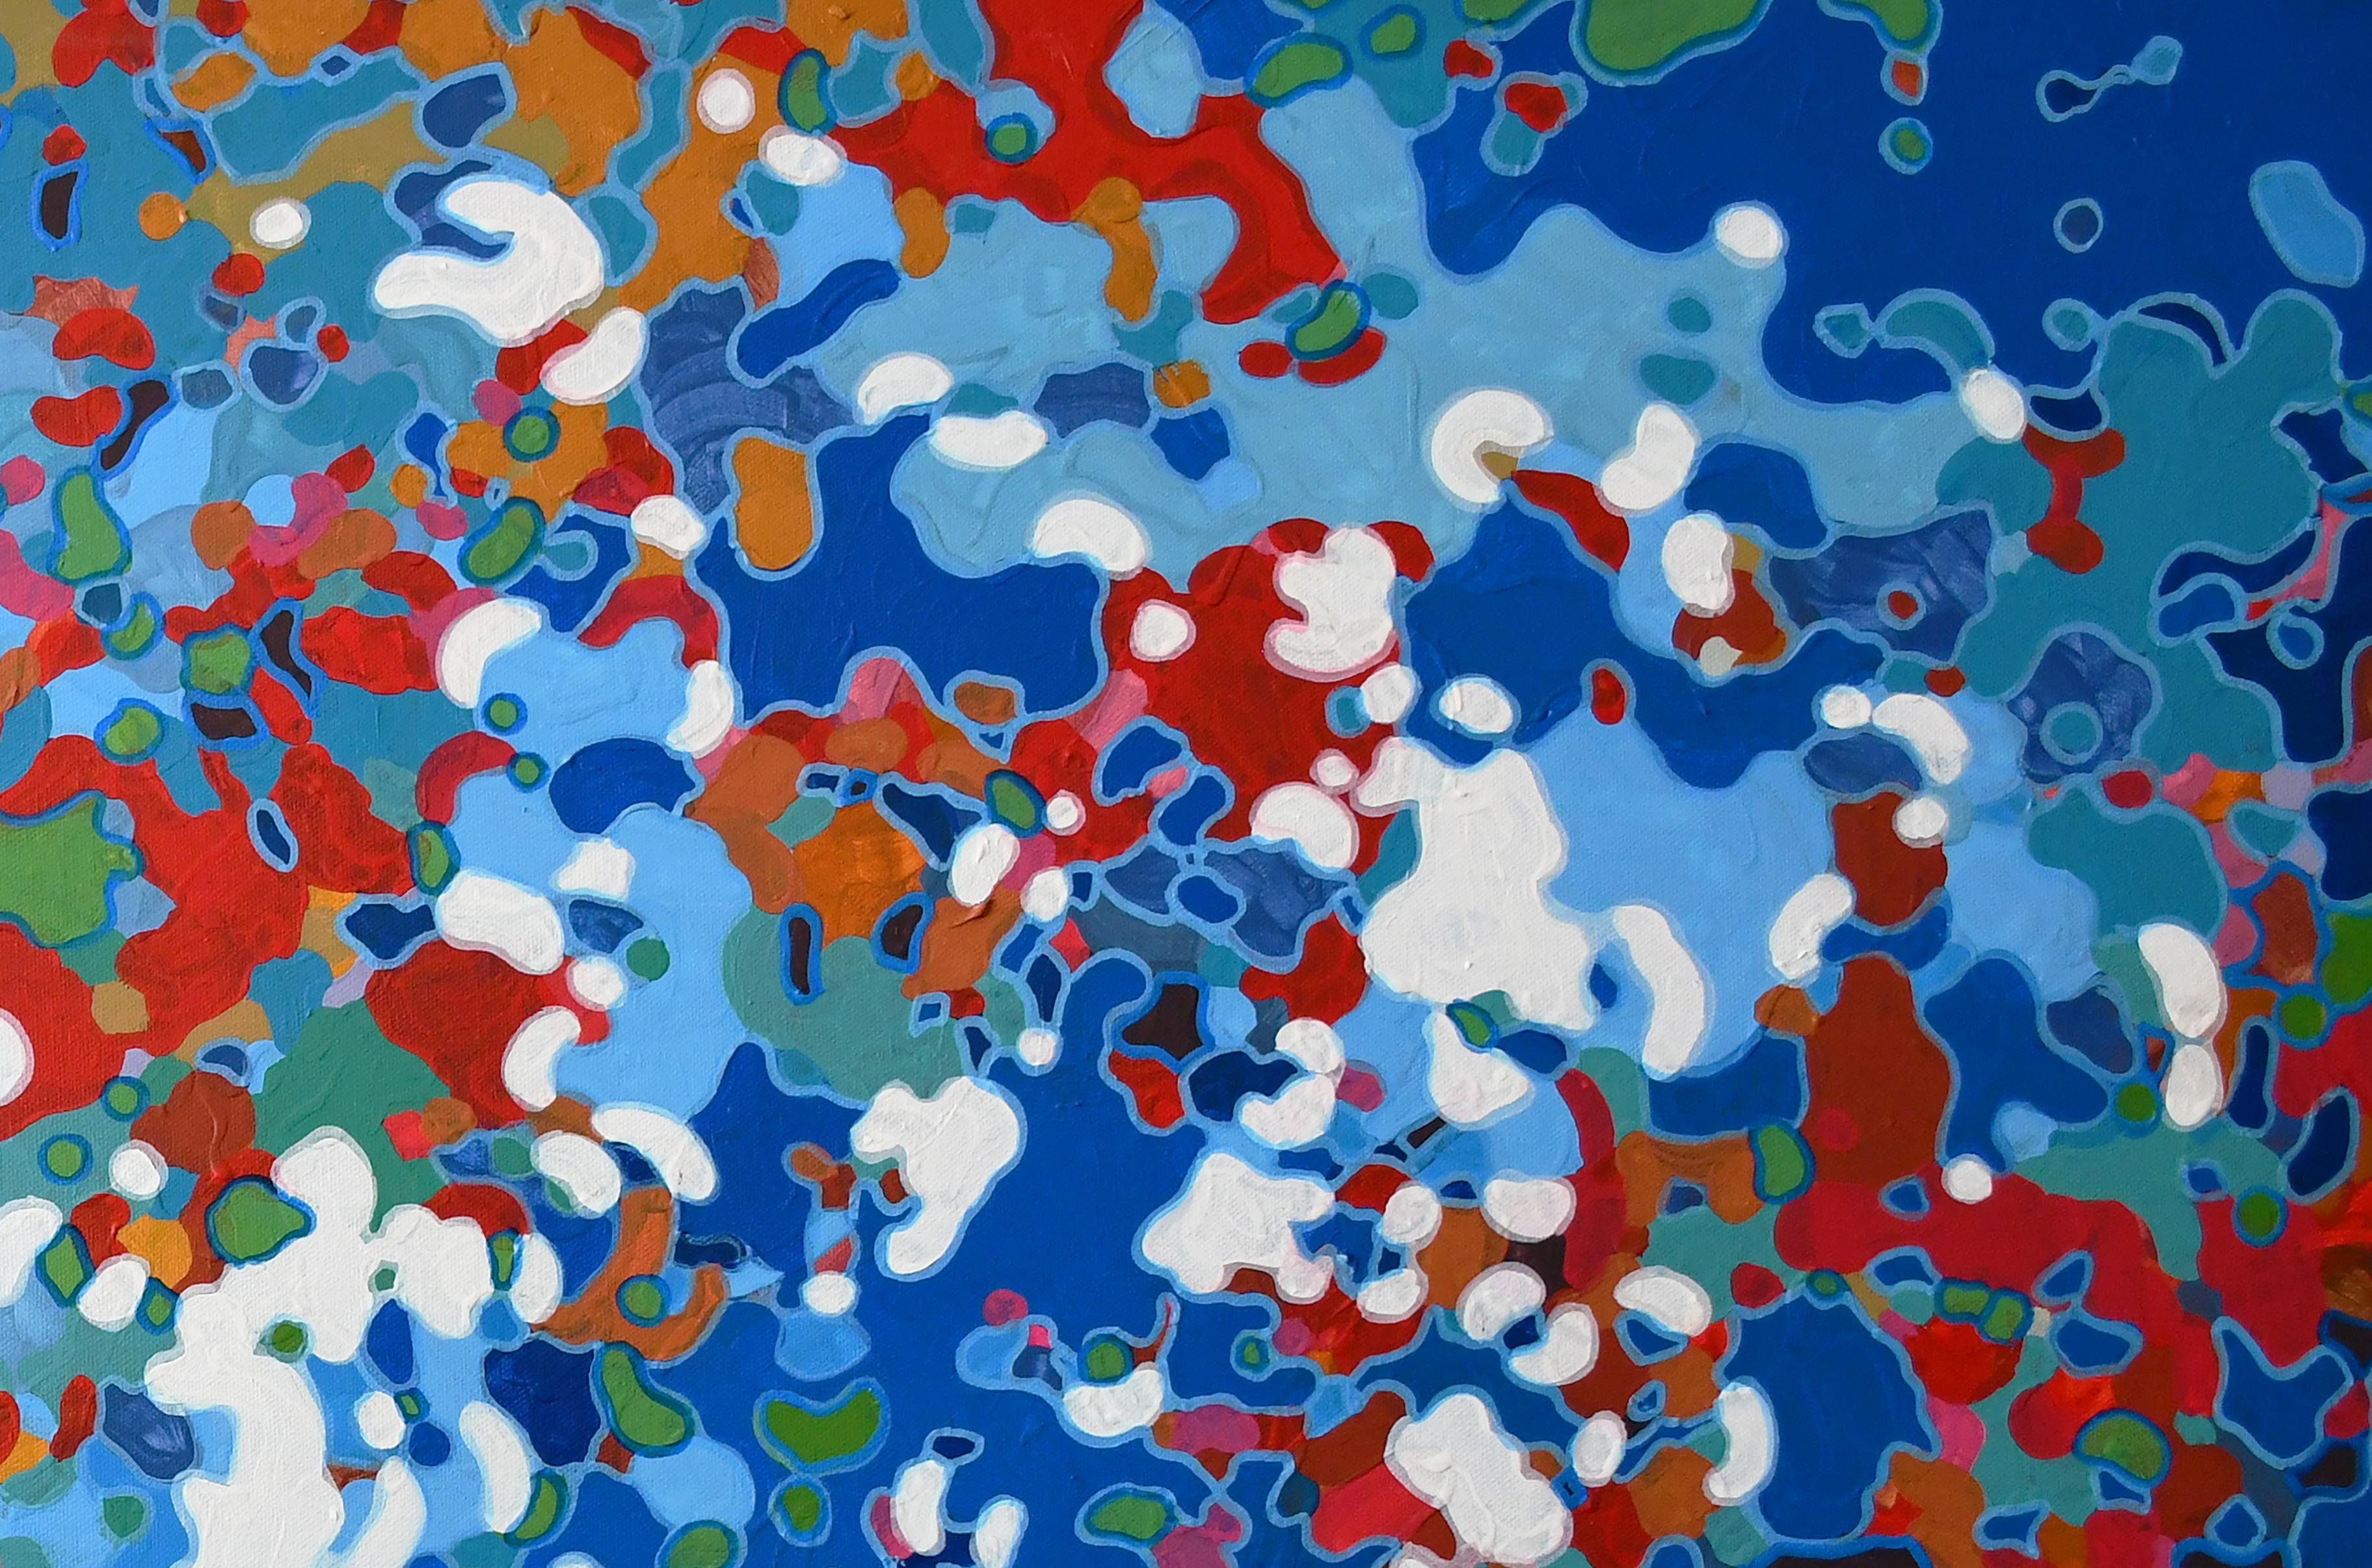 Commemorate, peinture abstraite originale contemporaine rouge, blanche et bleue, 2022
30